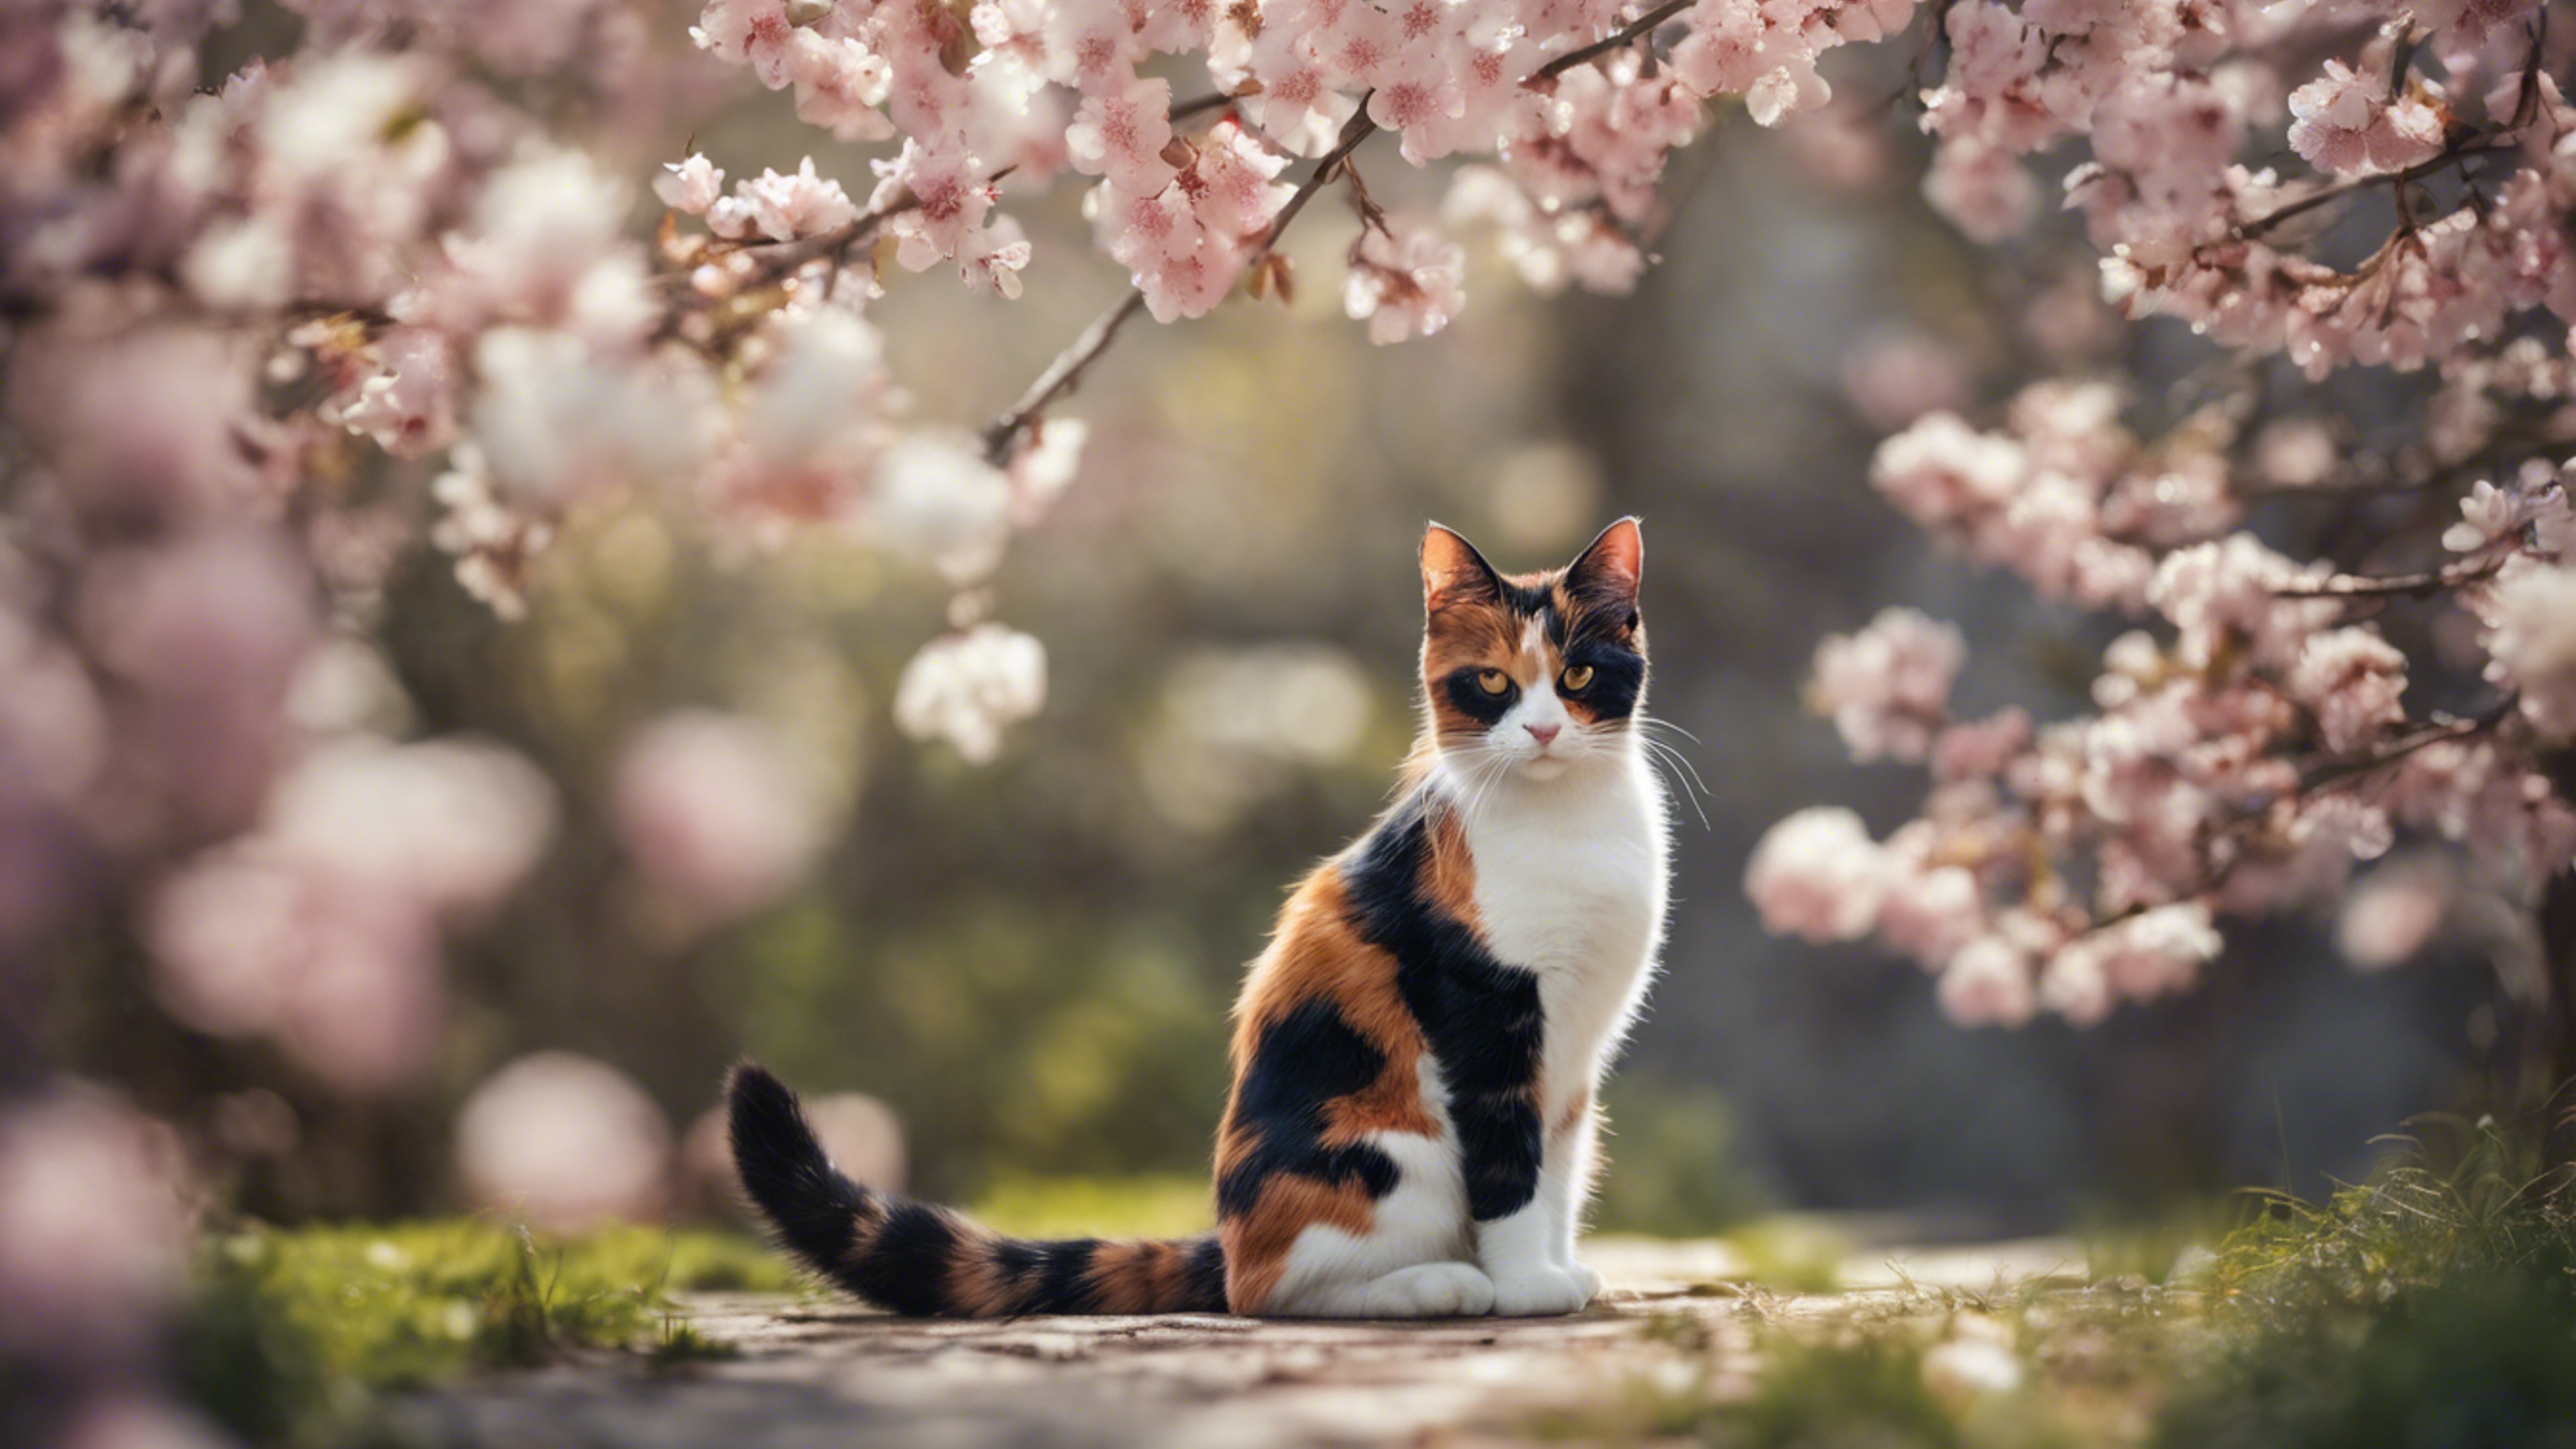 A scene of a secret conversation between spring blossoms and a curious calico cat. Divar kağızı[25a93ed29c5f43b5b851]